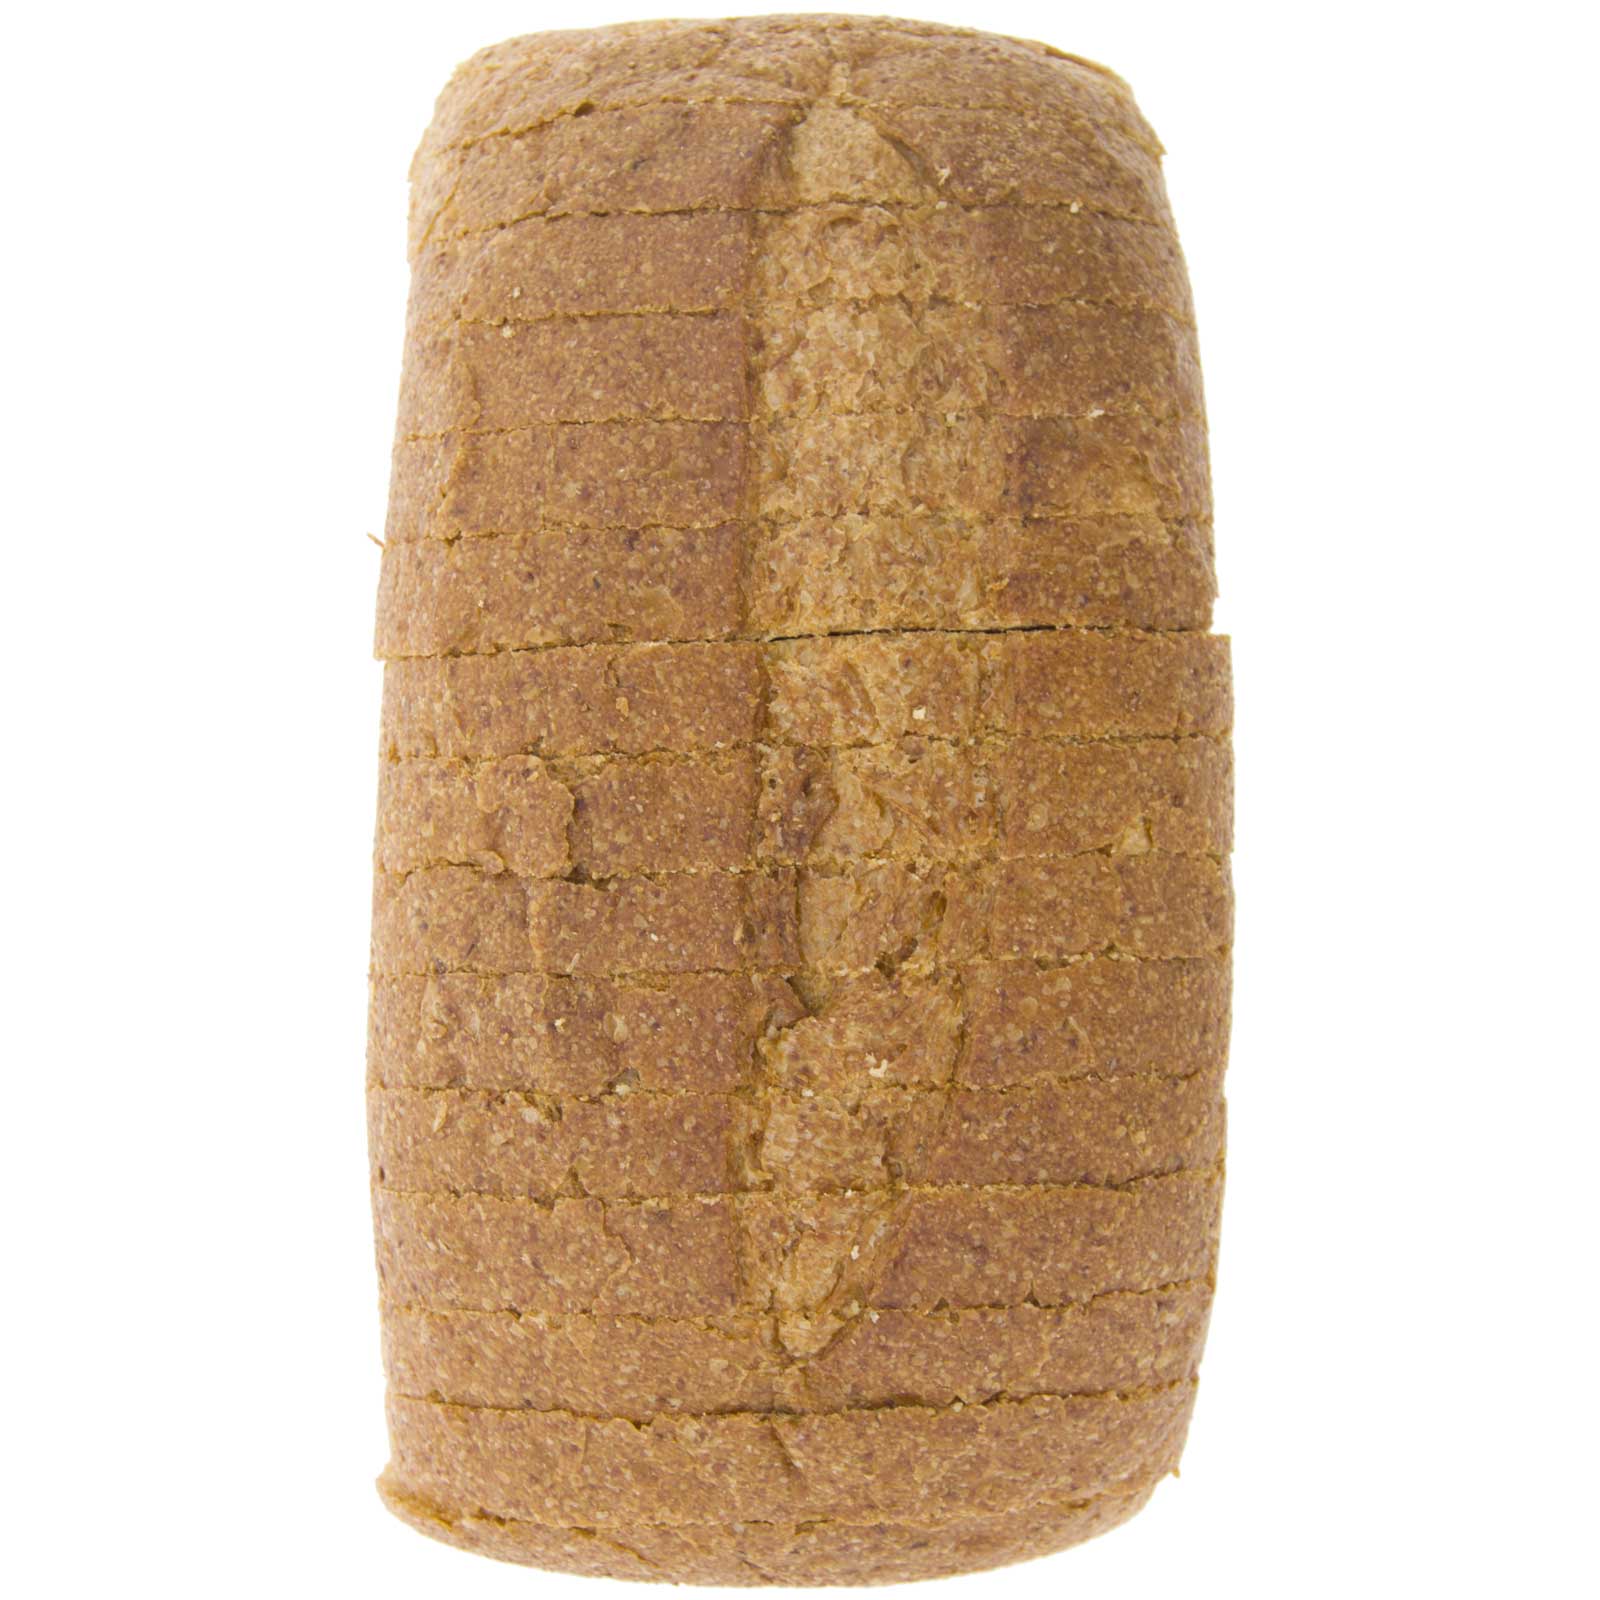 Pan de Molde de Trigo Khorasan Kamut® Integral 400g Ecológico